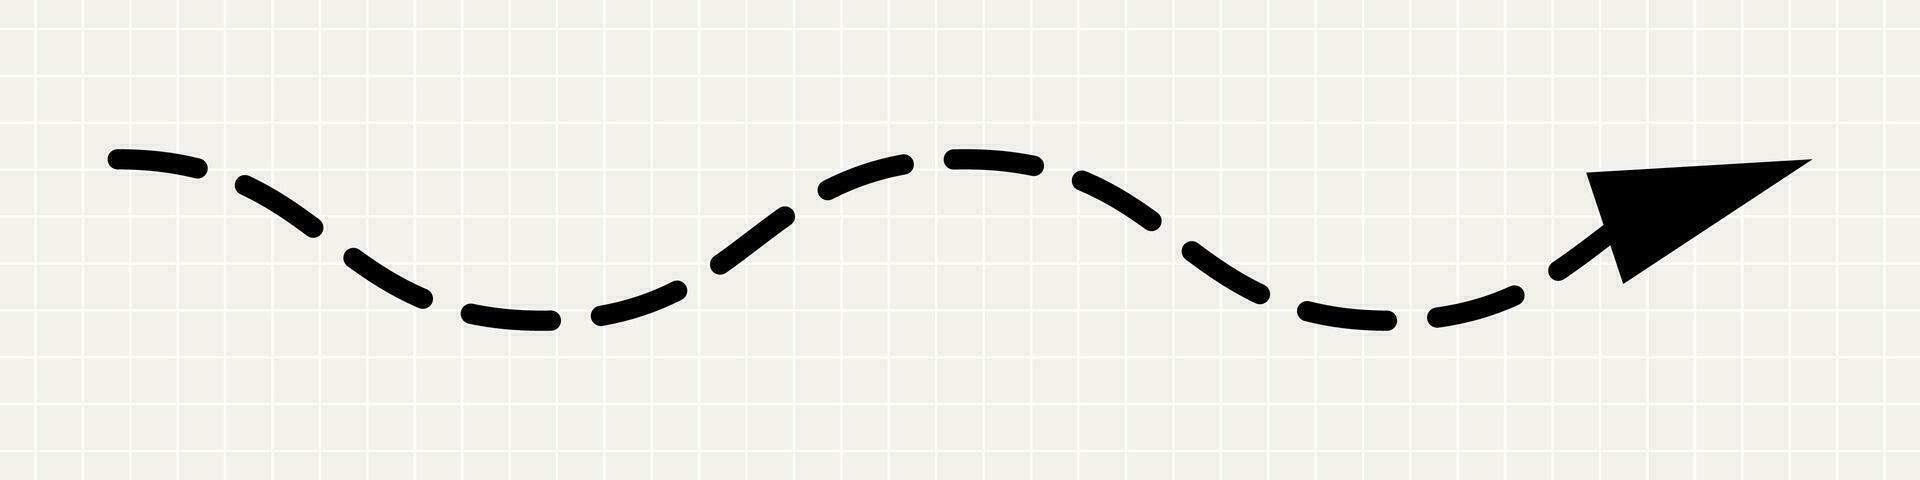 en tunn, böjd svart pil pekande till de höger. en minimalistisk lekfull pekare i de form av en prickad linje på en anteckningsbok bakgrund. vektor